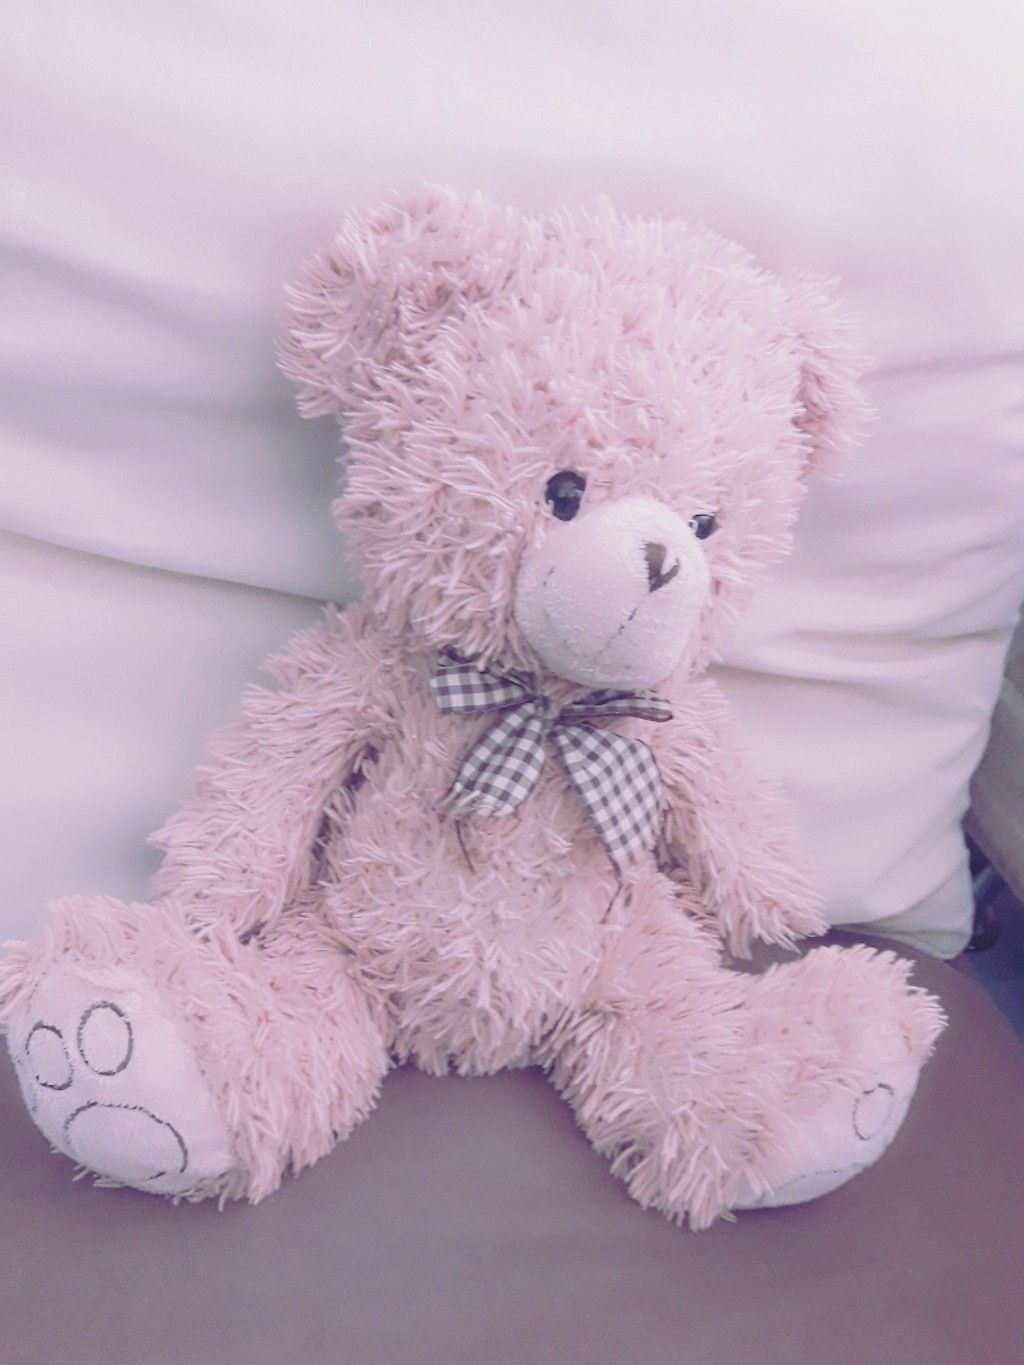 A pink teddy bear sitting on a bed. - Teddy bear